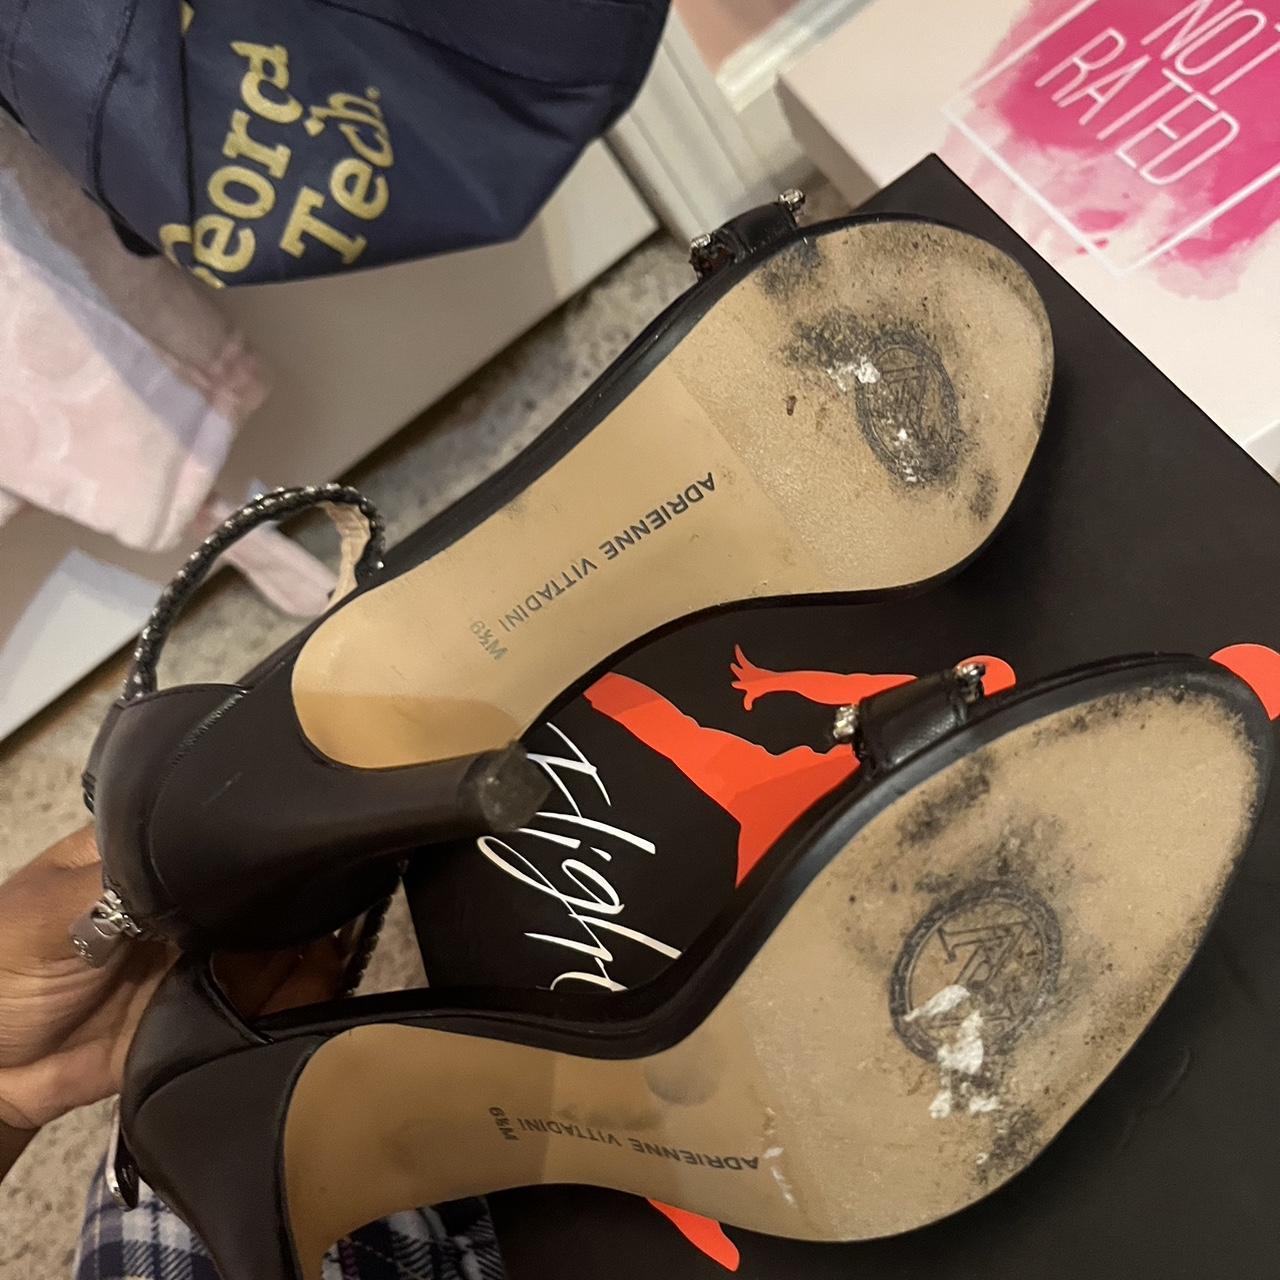 Adrienne Vittadini Black Leather Heels Size 9.5 - Depop